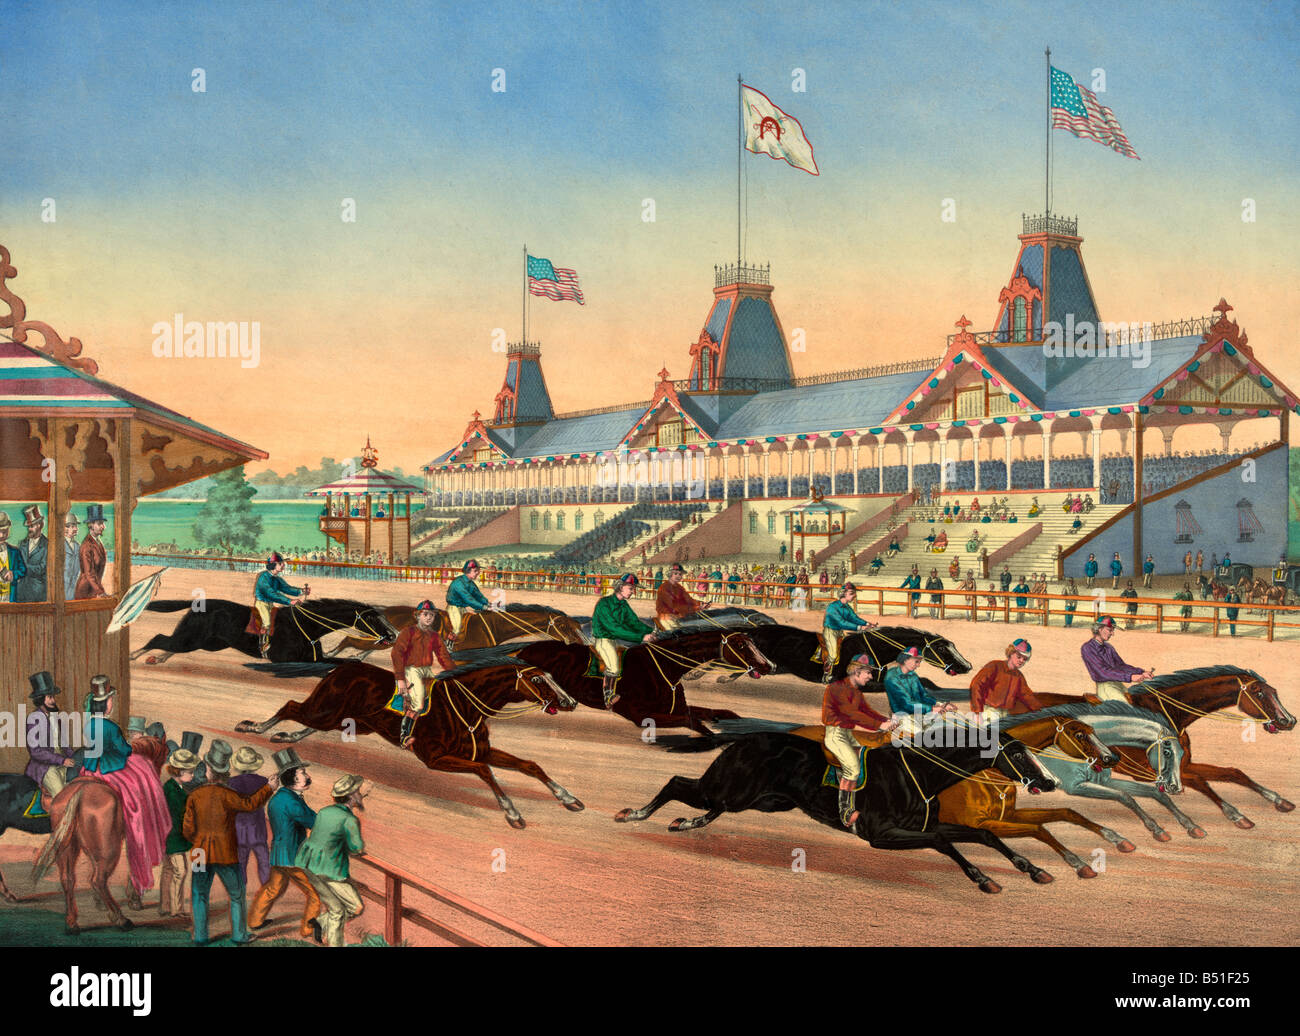 Imprimer montrant une course de chevaux en cours, peut-être à Monmouth Park, Long Branch, NJ vers 1870 Banque D'Images